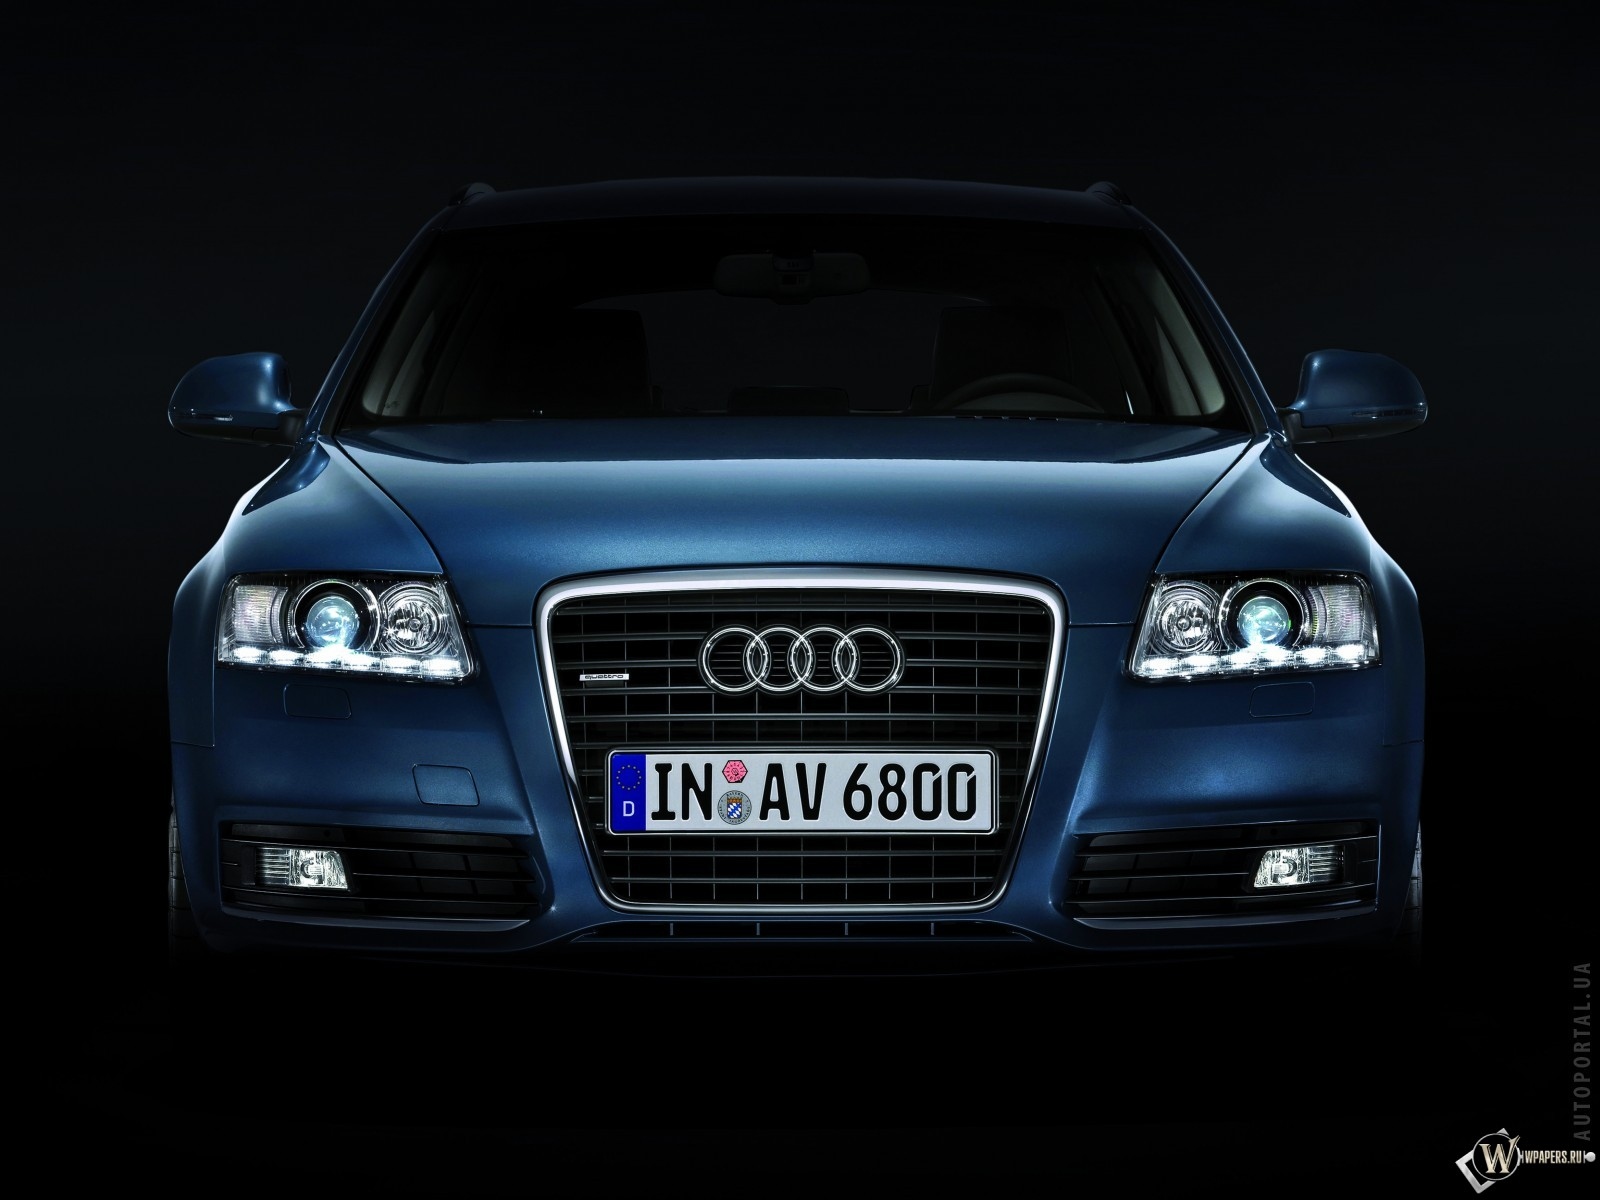 Audi A6 Avant 1600x1200